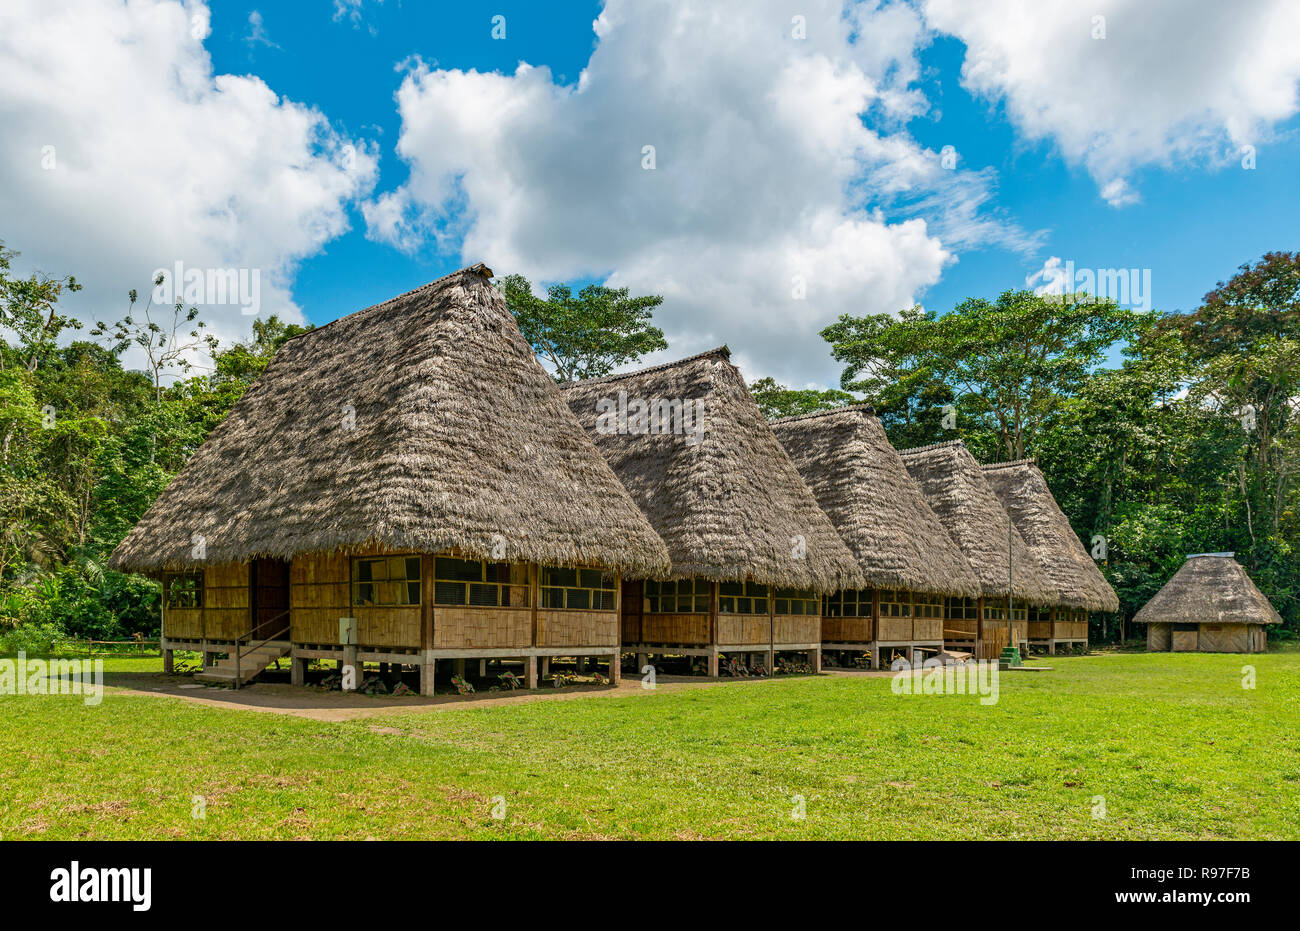 L'habitat traditionnel dans les grandes baraques en bois avec toit en feuille de palmier dans la forêt amazonienne, parc national Yasuni, en Equateur. Banque D'Images